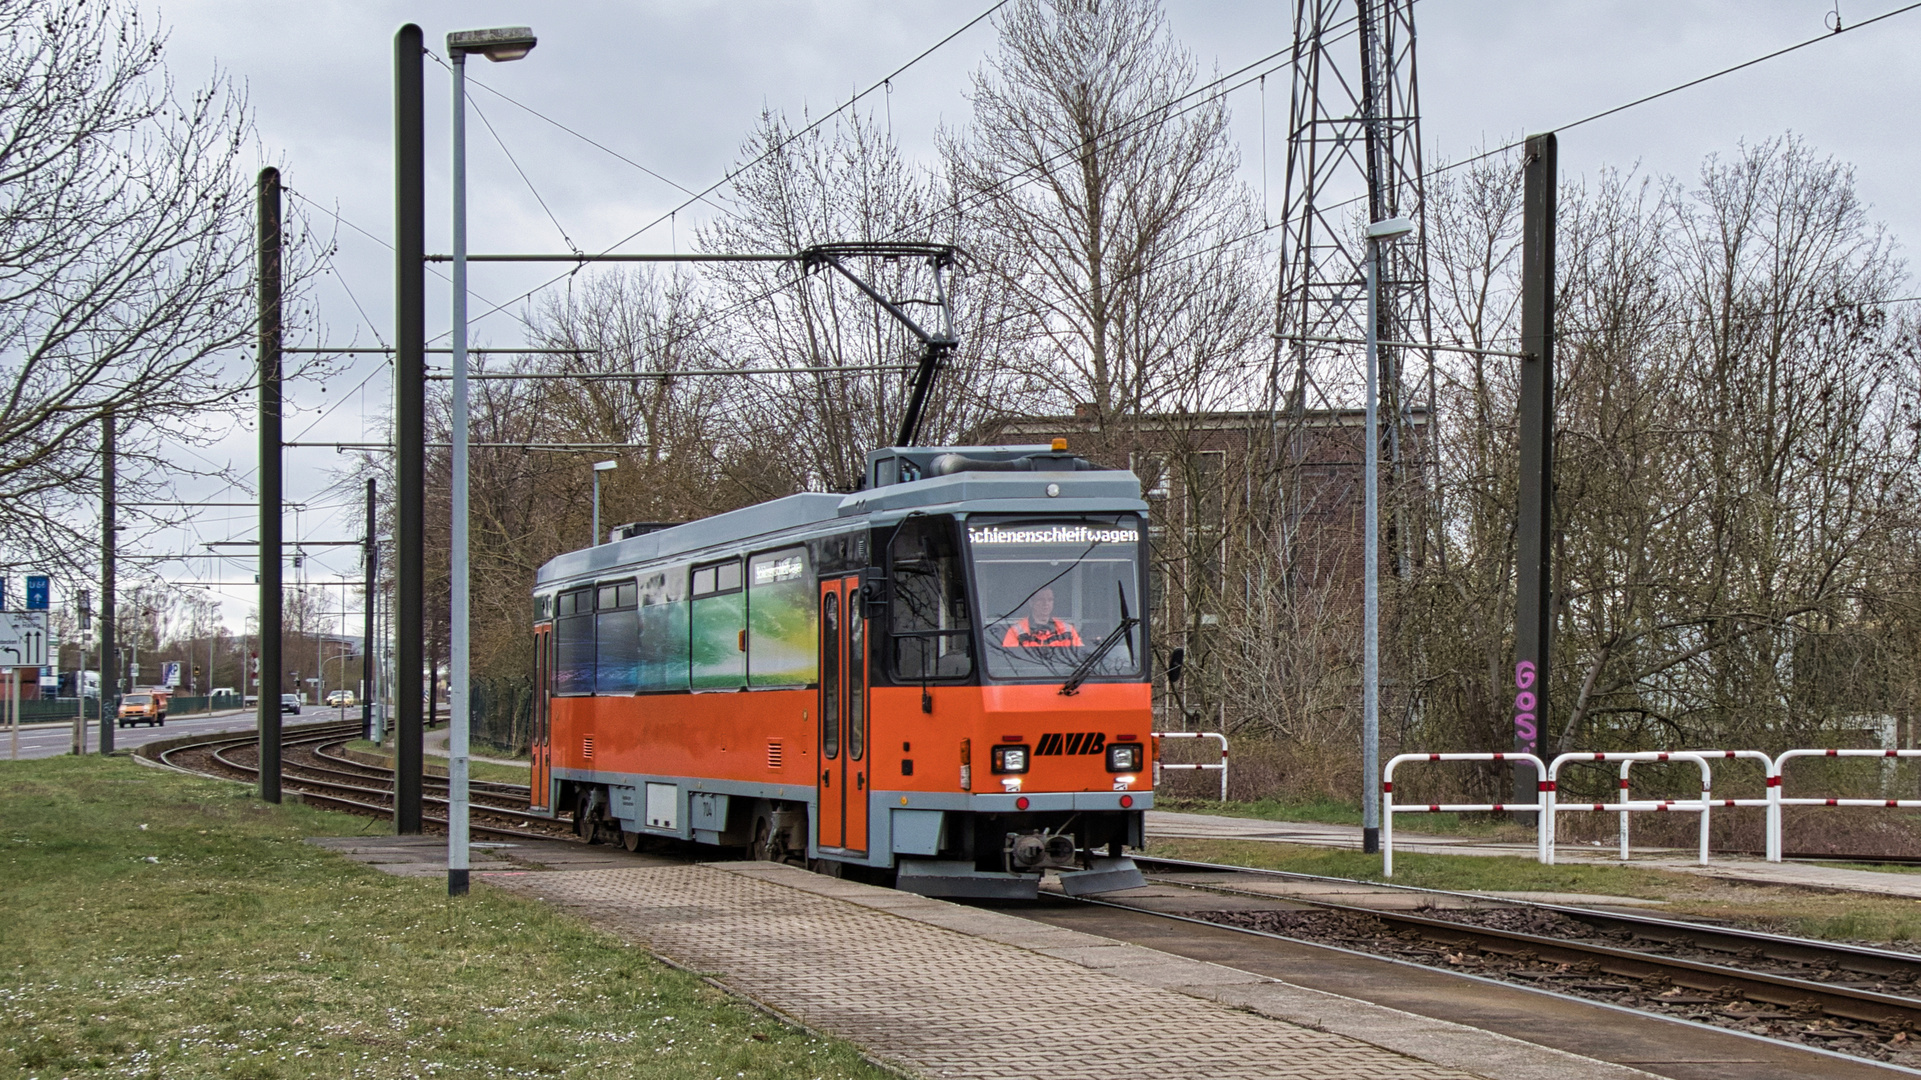 Schienenschleifwagen 704 in Magdeburg